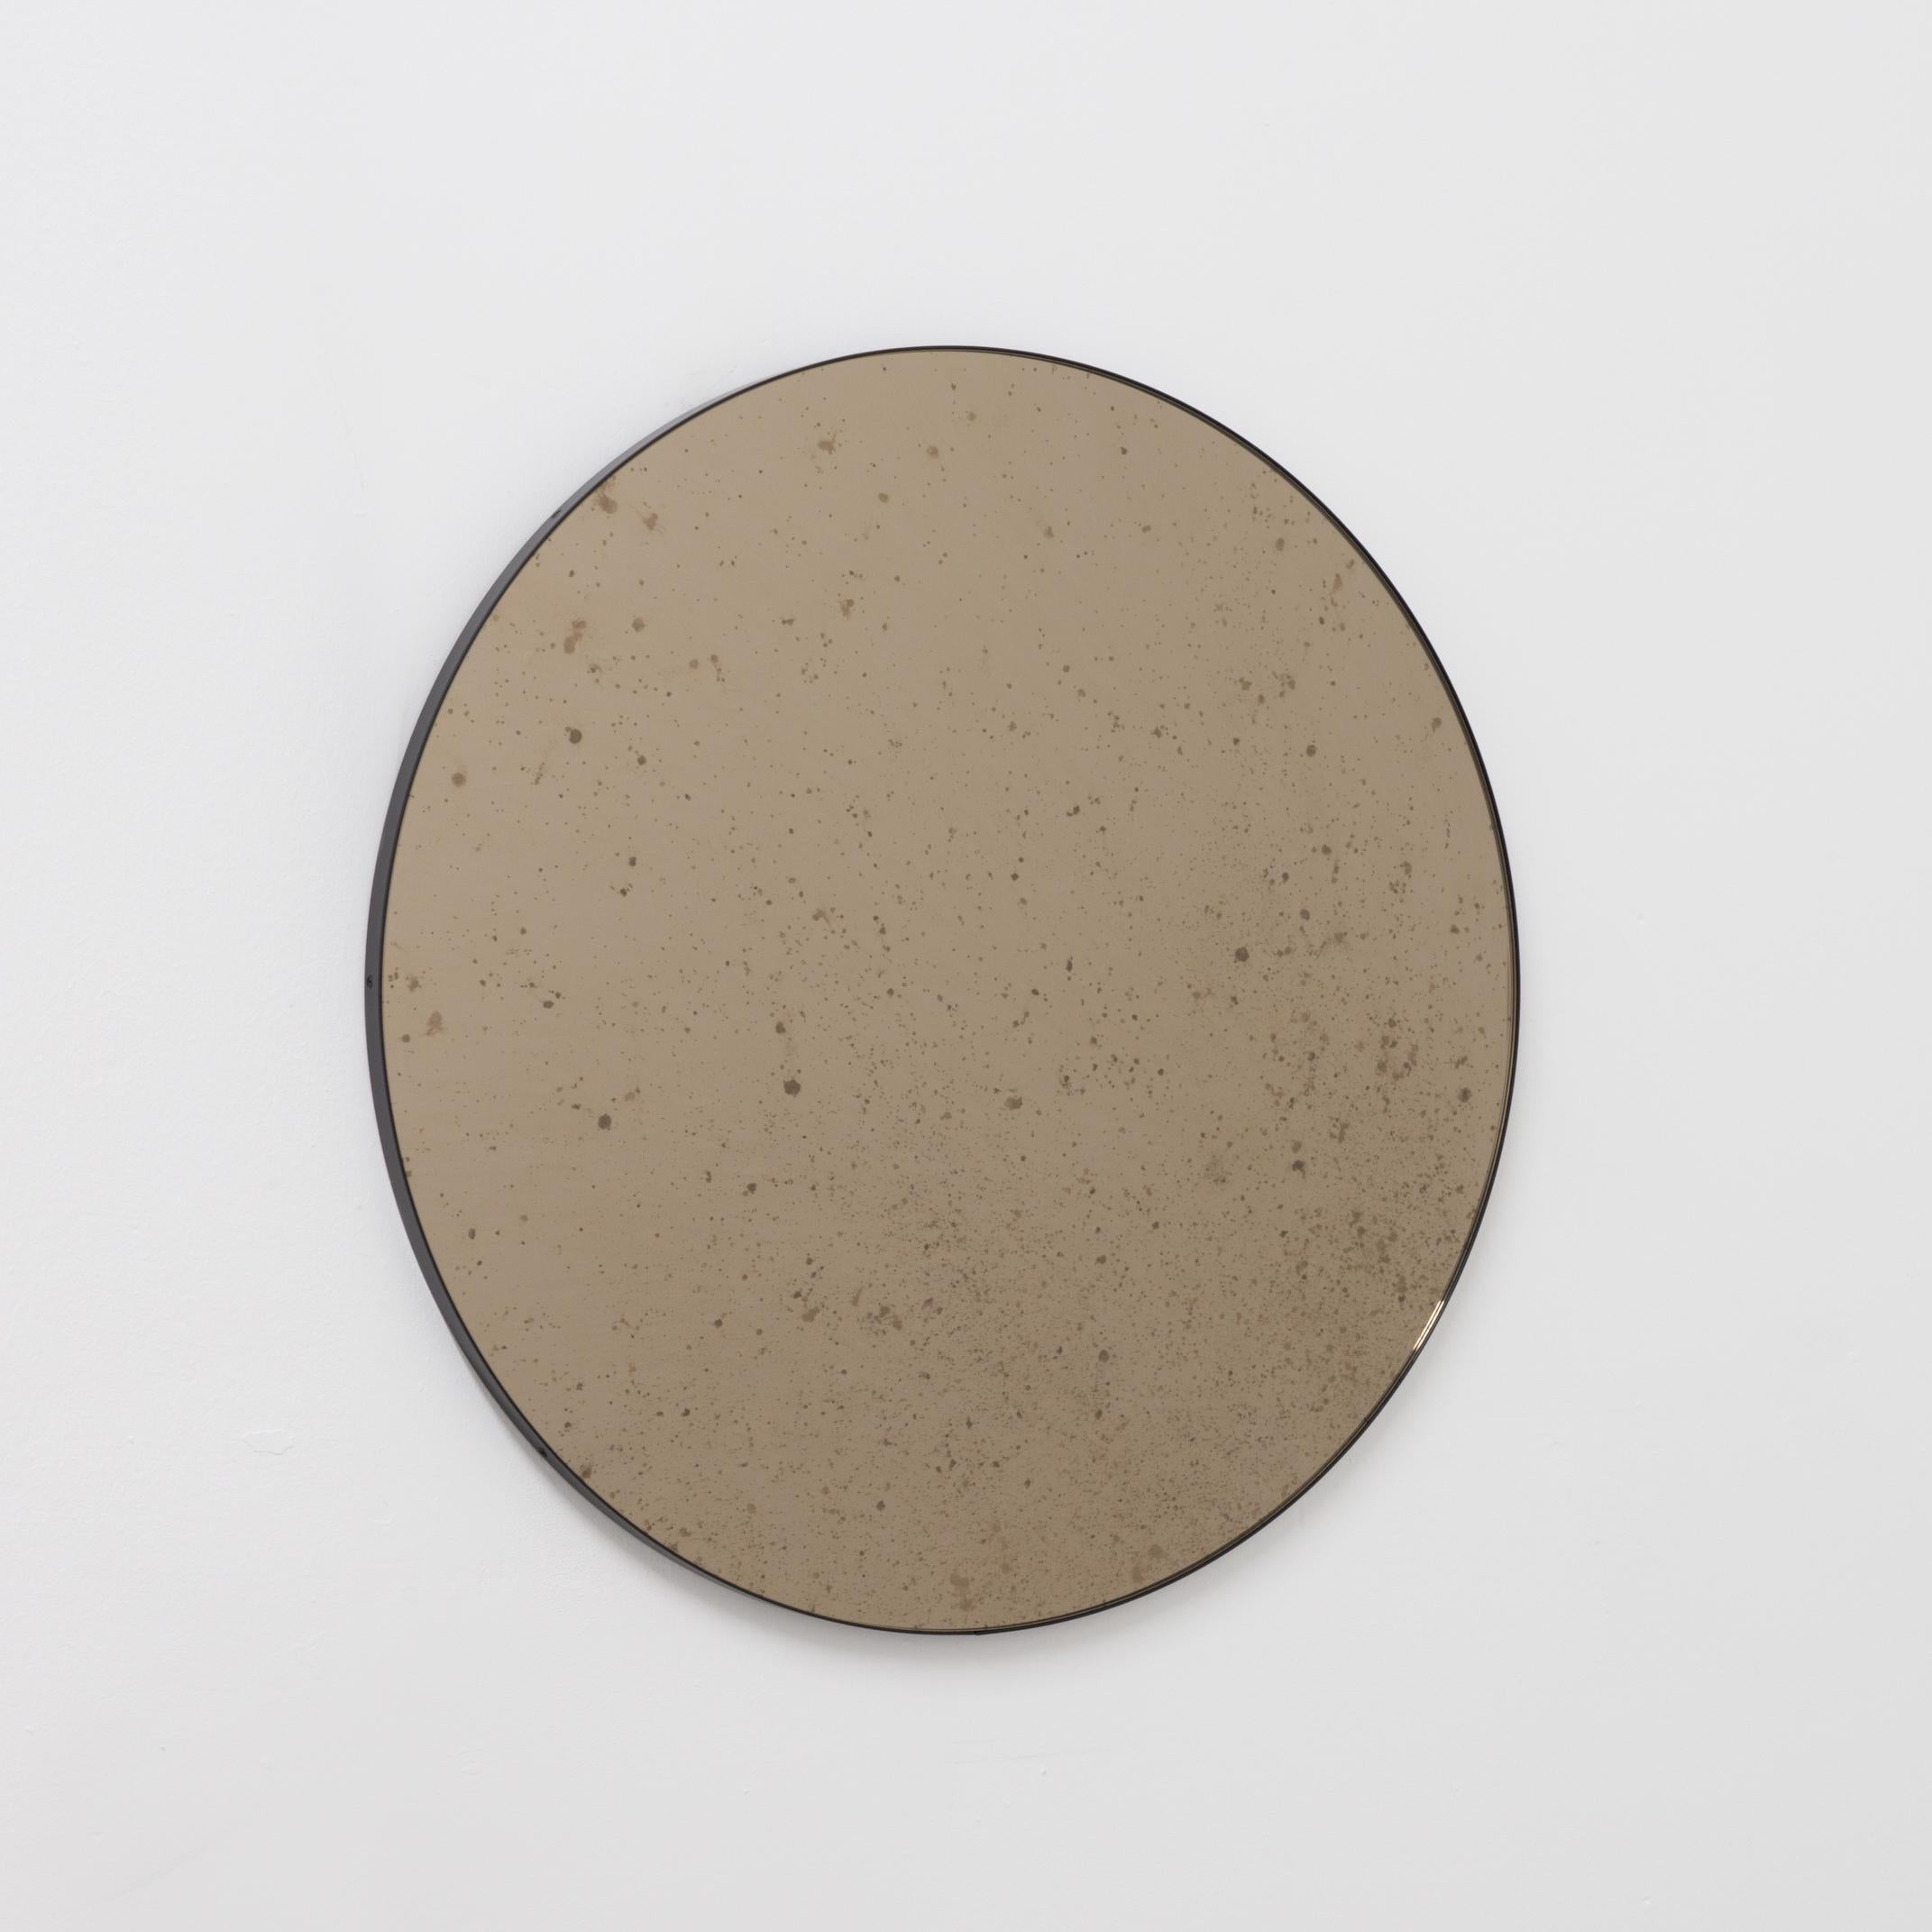 Der runde, bronzefarbene Orbis™-Spiegel mit minimalistischem, schwarzem, pulverbeschichtetem Aluminiumrahmen ist ein echter Hingucker. Entworfen und handgefertigt in London, UK.

Die mittelgroßen, großen und extragroßen Spiegel (60, 80 und 100 cm)